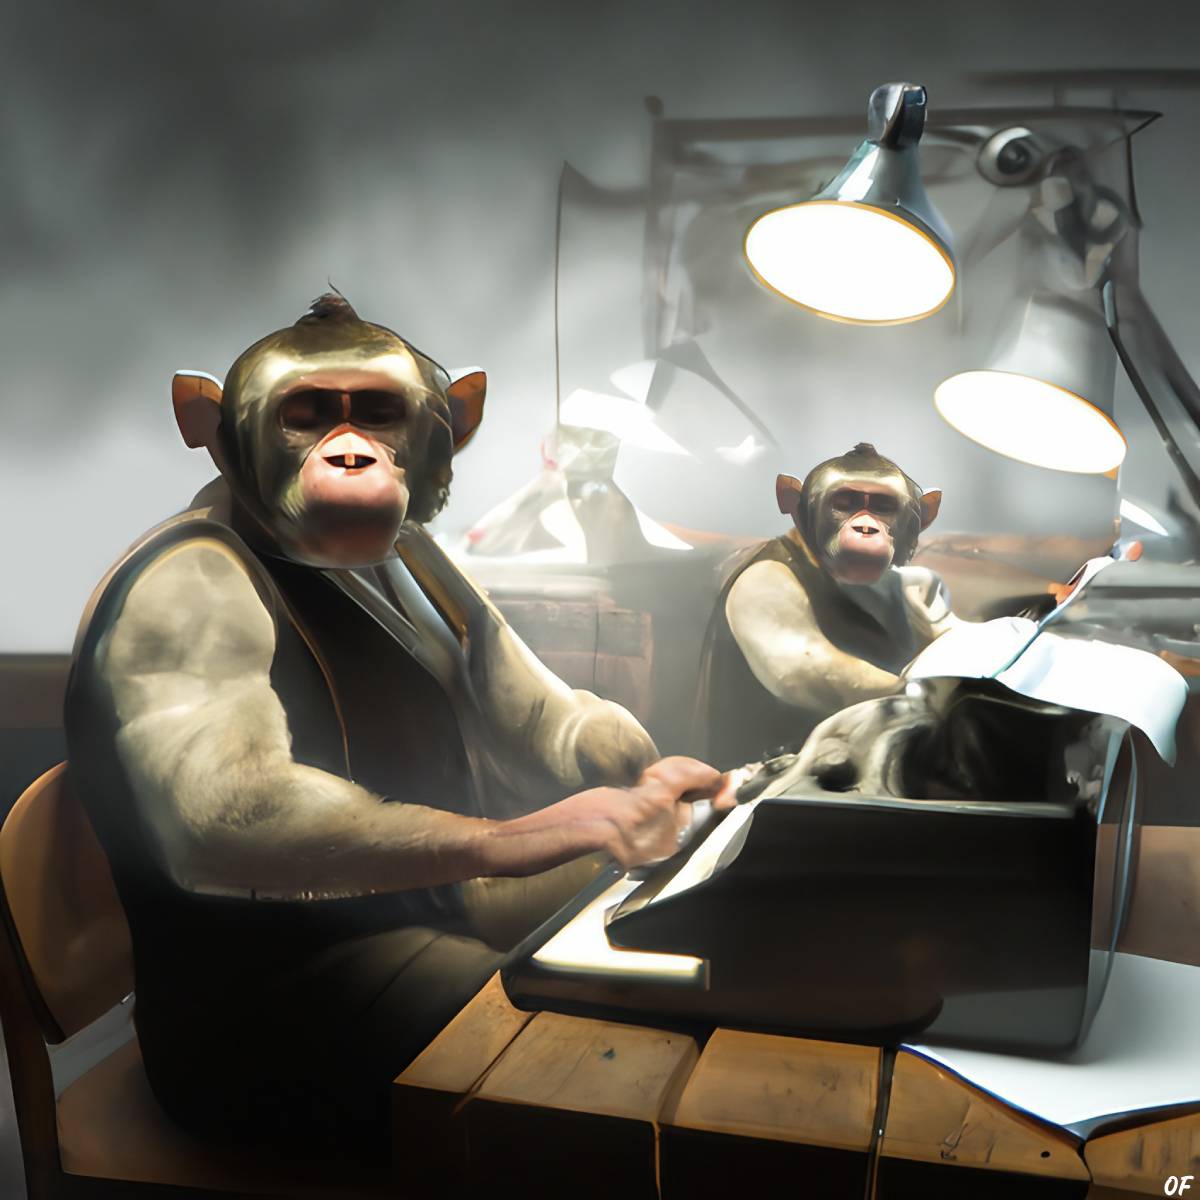 The Babel Monkeys by Odd Feed. (© Odd Feed)